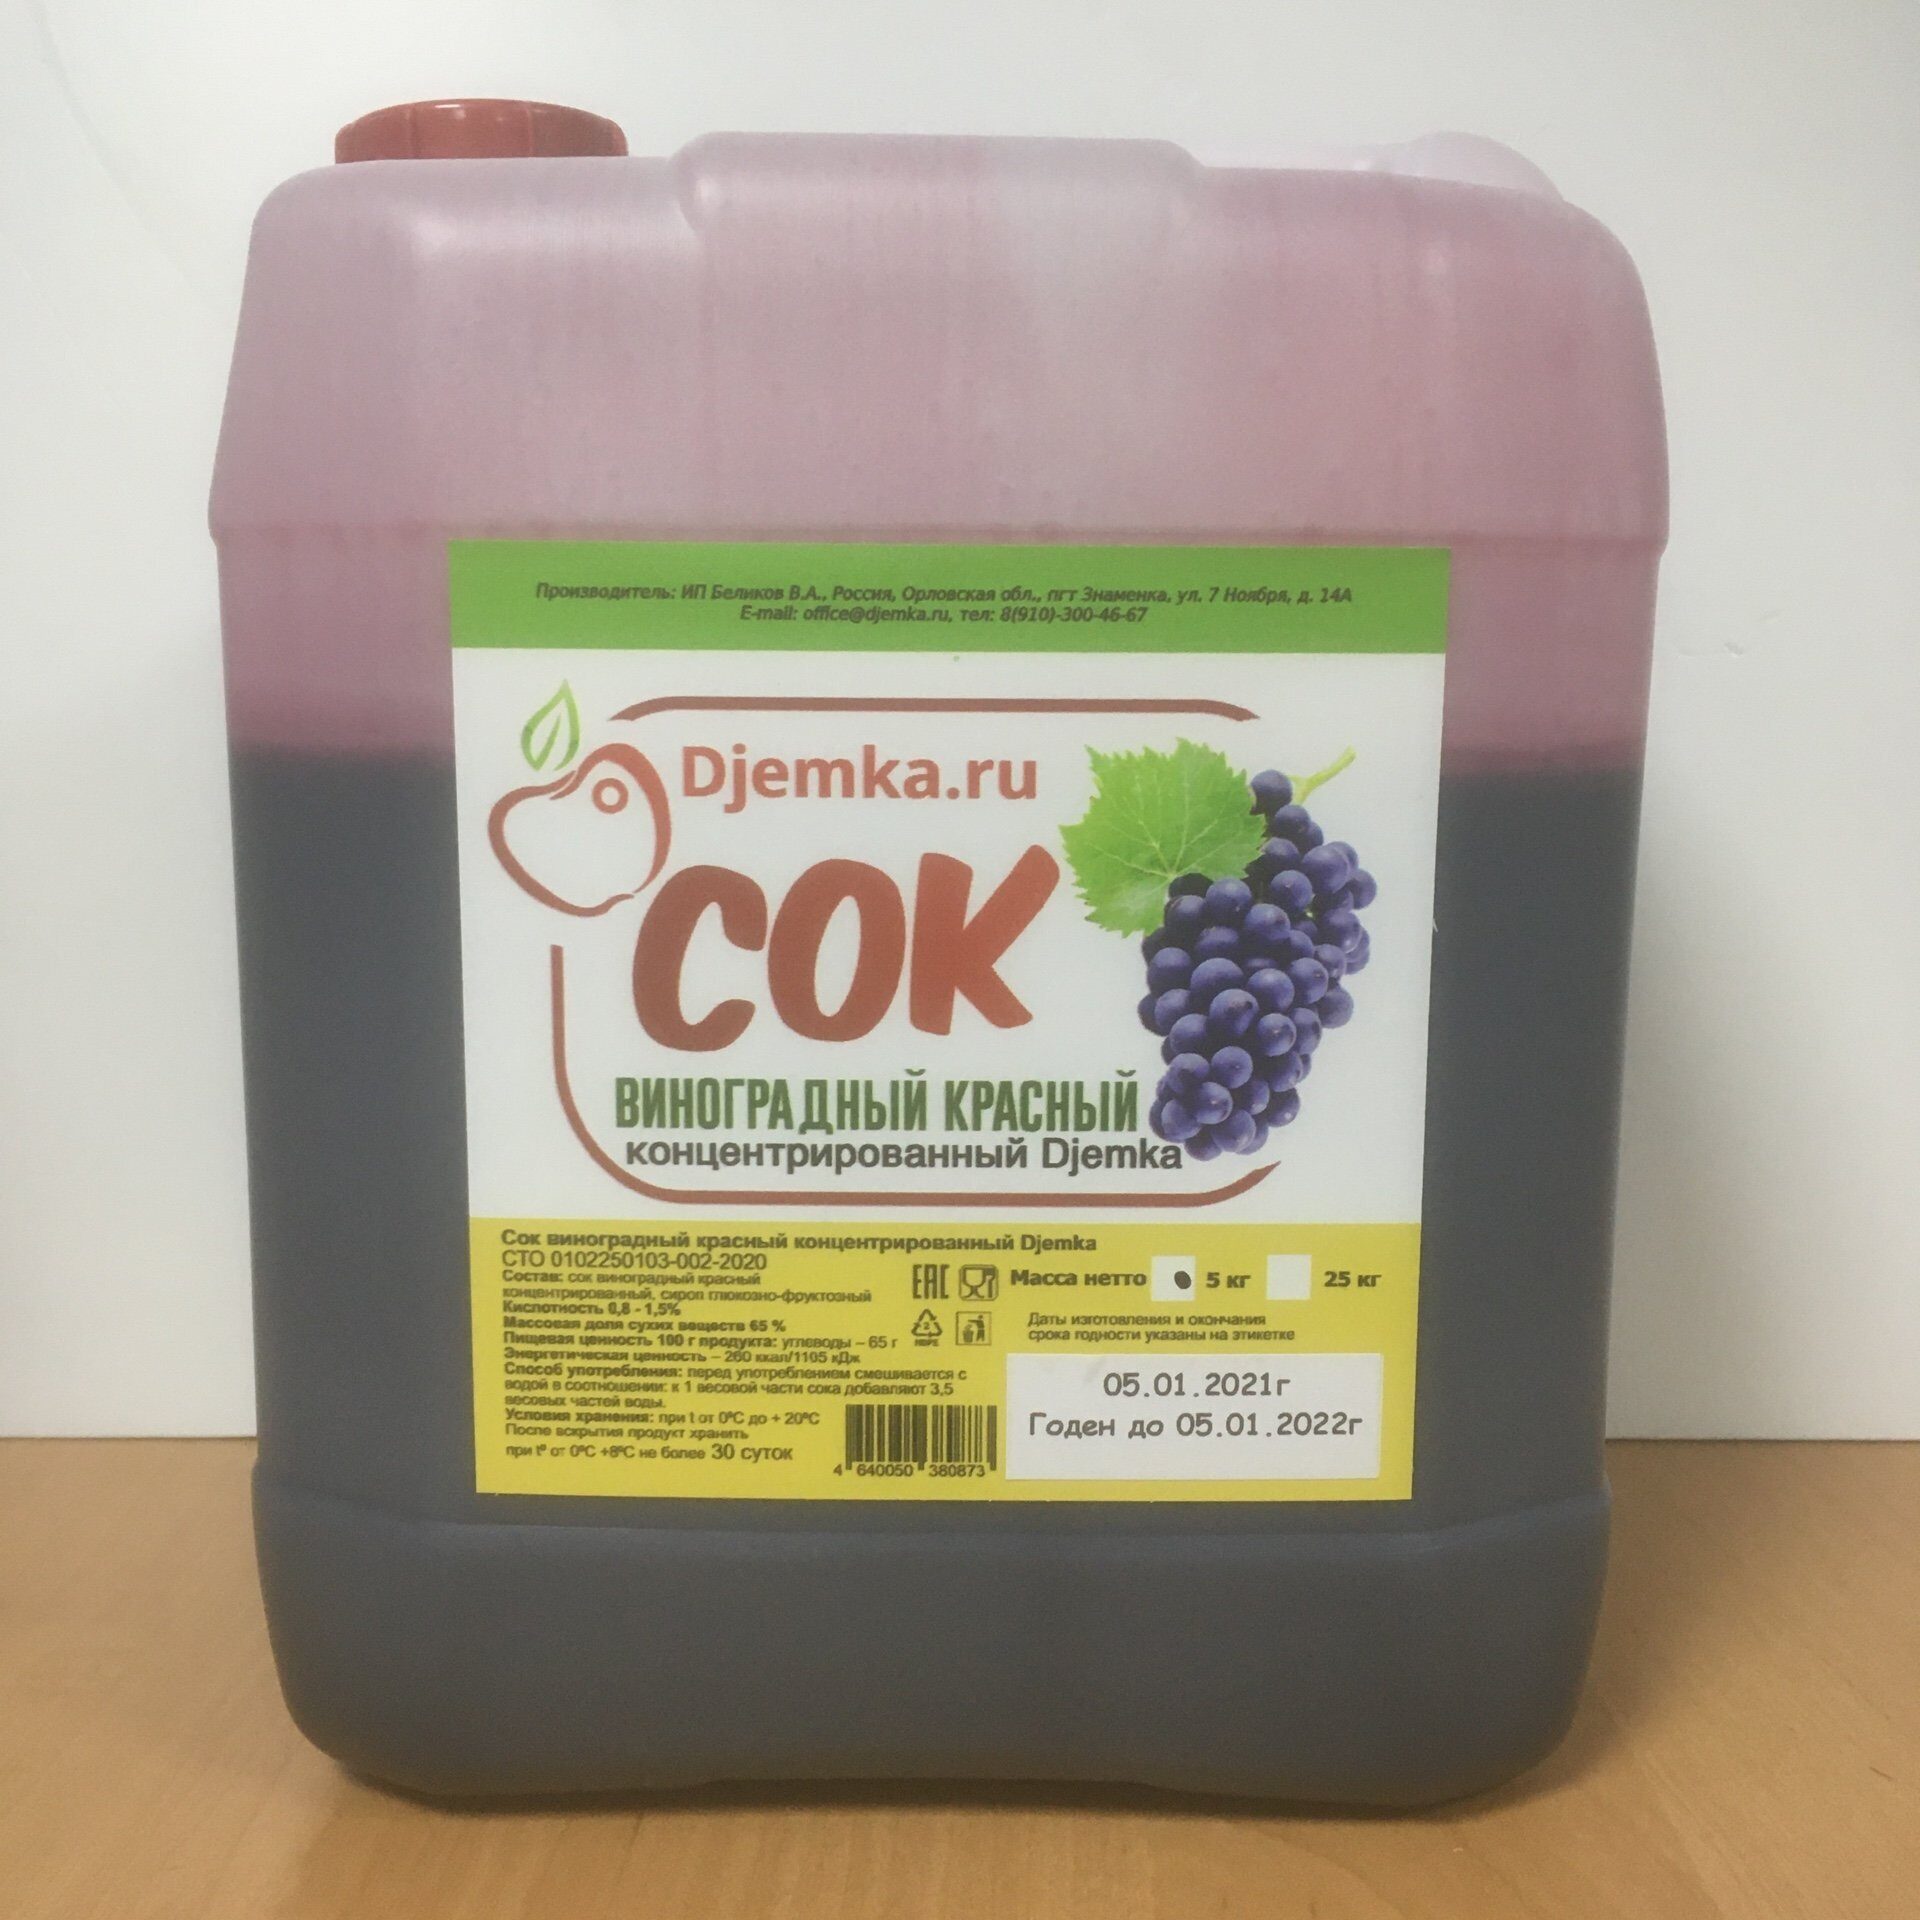 Сок виноградный концентрированный в домашних условиях. Концентрат djemka виноградный красный. Концентрированный виноградный сок. Концентрат сока. Концентрат сока винограда.